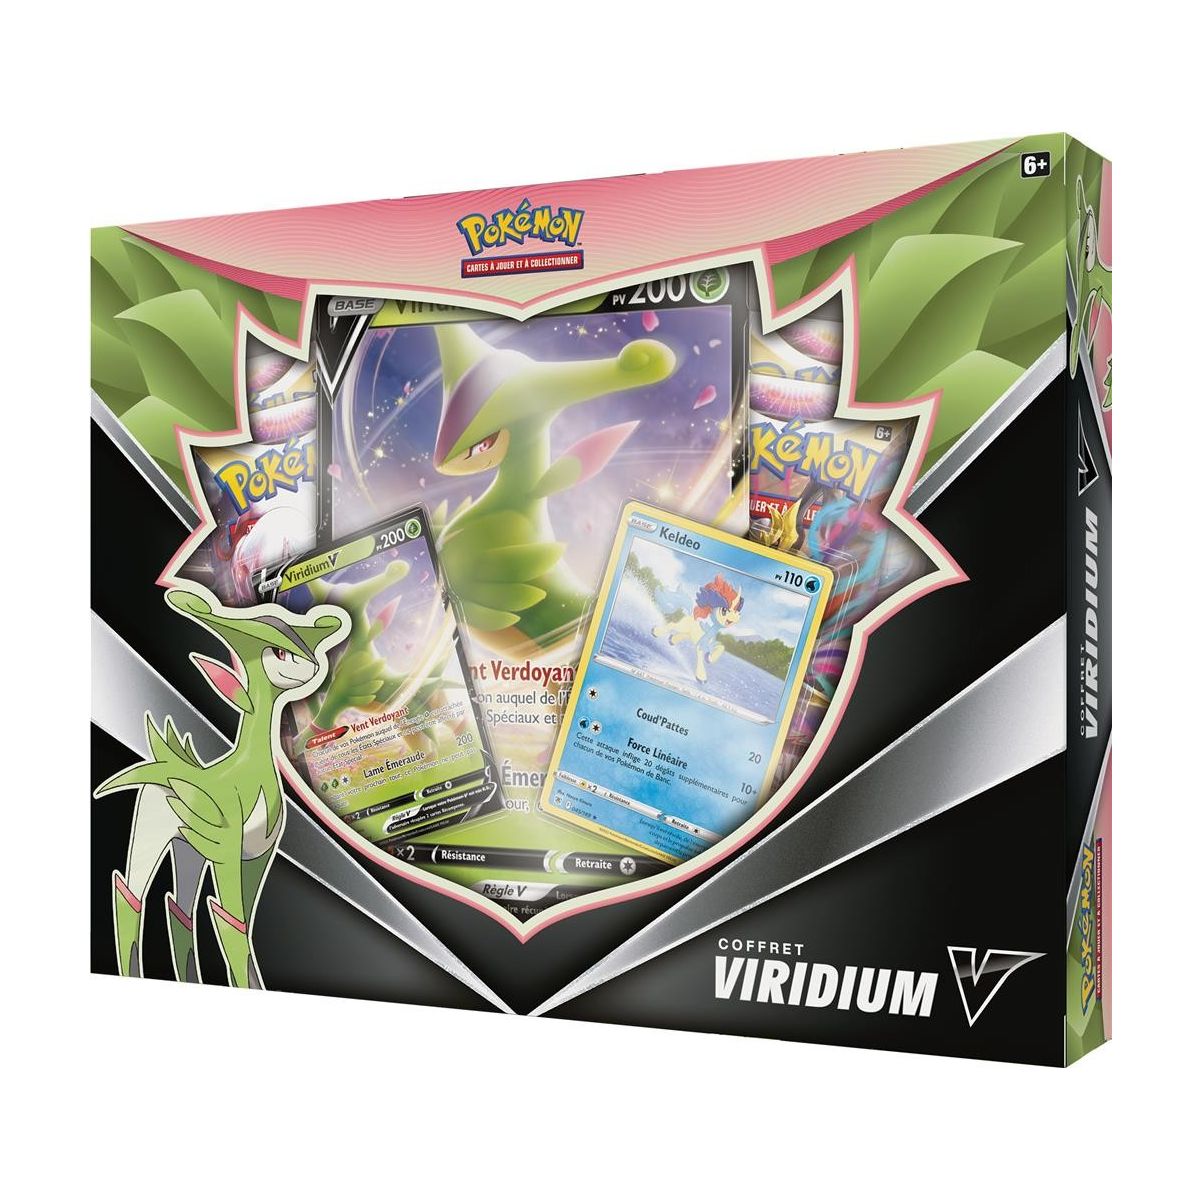 Pokémon - Box set - Viridium V - October 2022 - FR